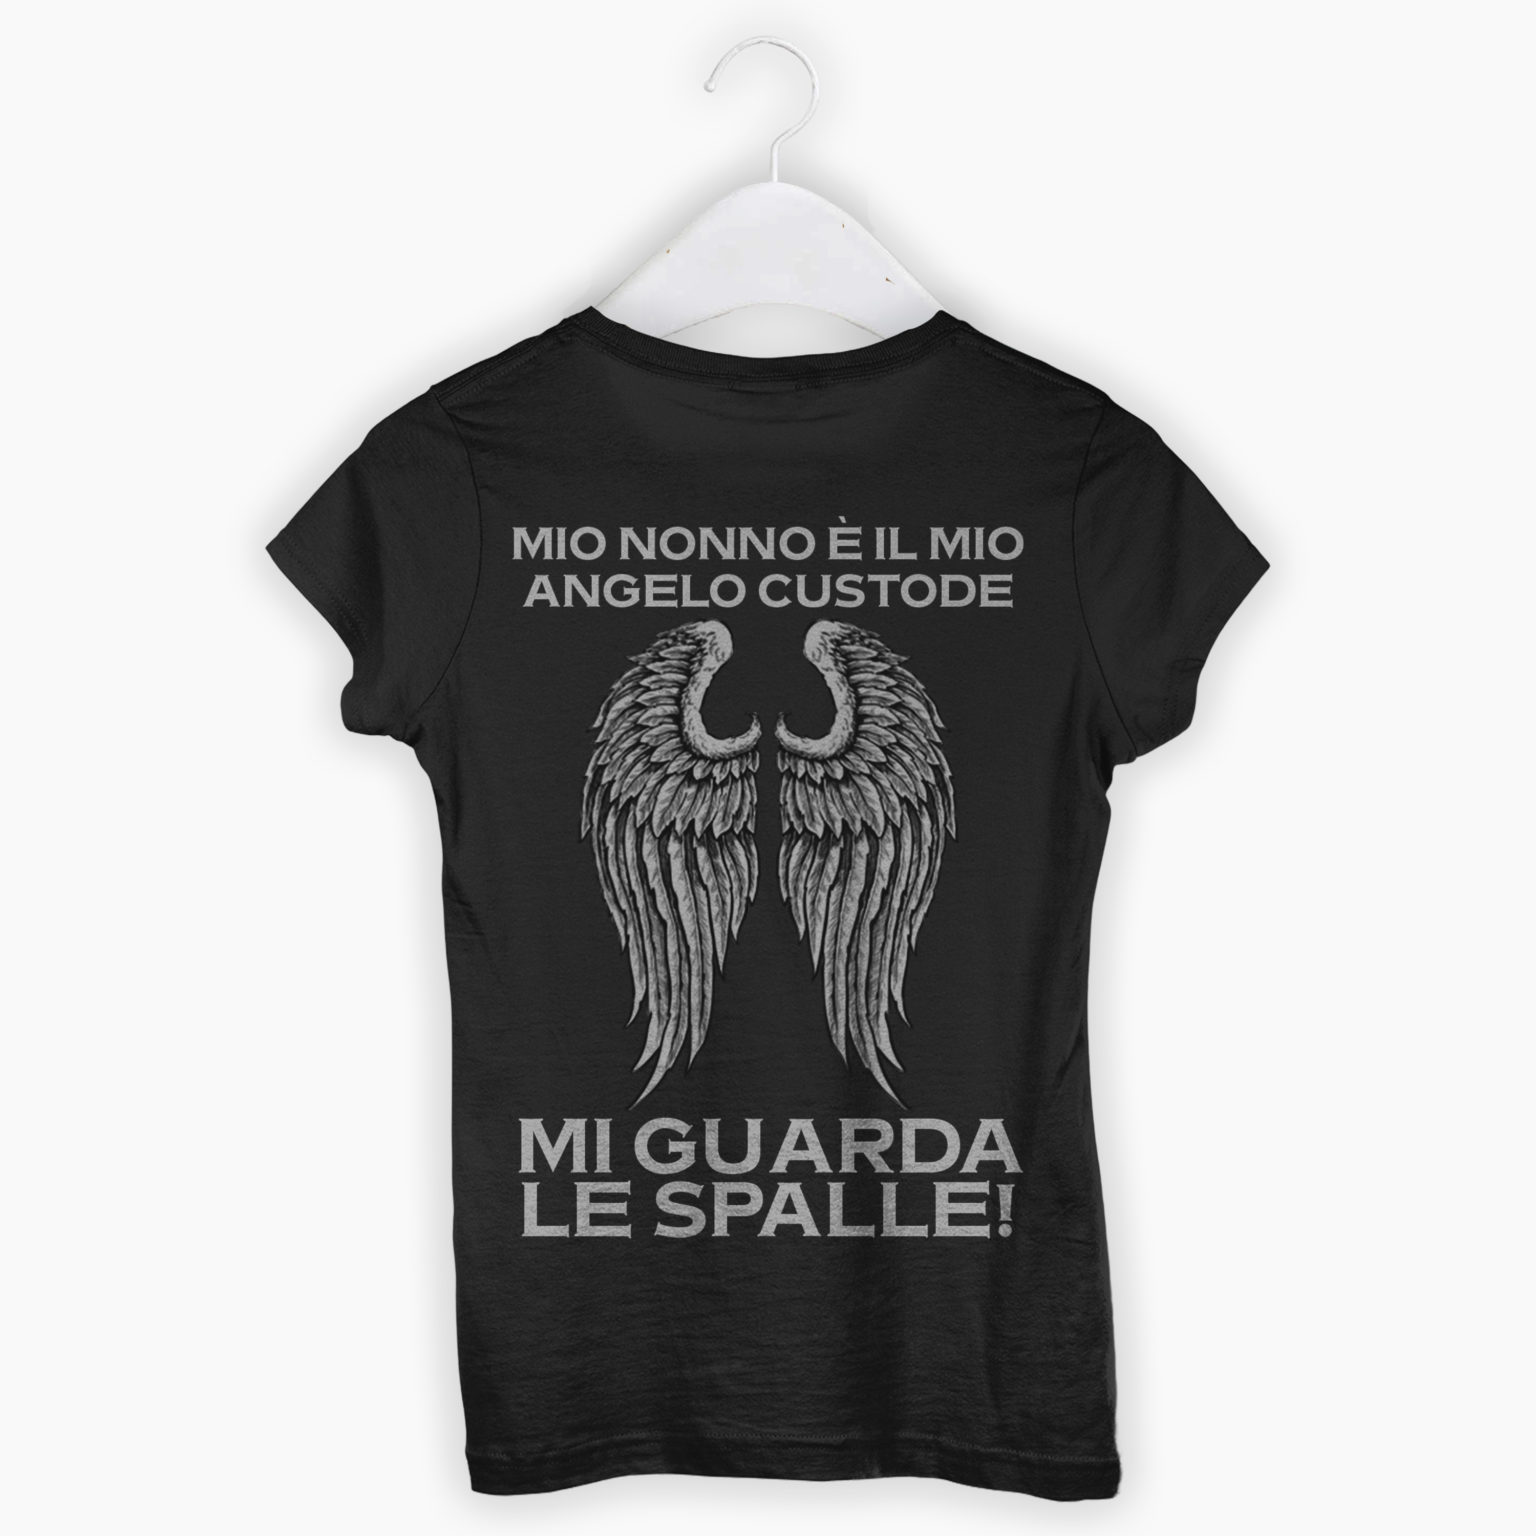 T-shirt Uomo/Donna – Mio Nonno E’ Il Mio Angelo Custode, Mi Guarda Le Spalle!